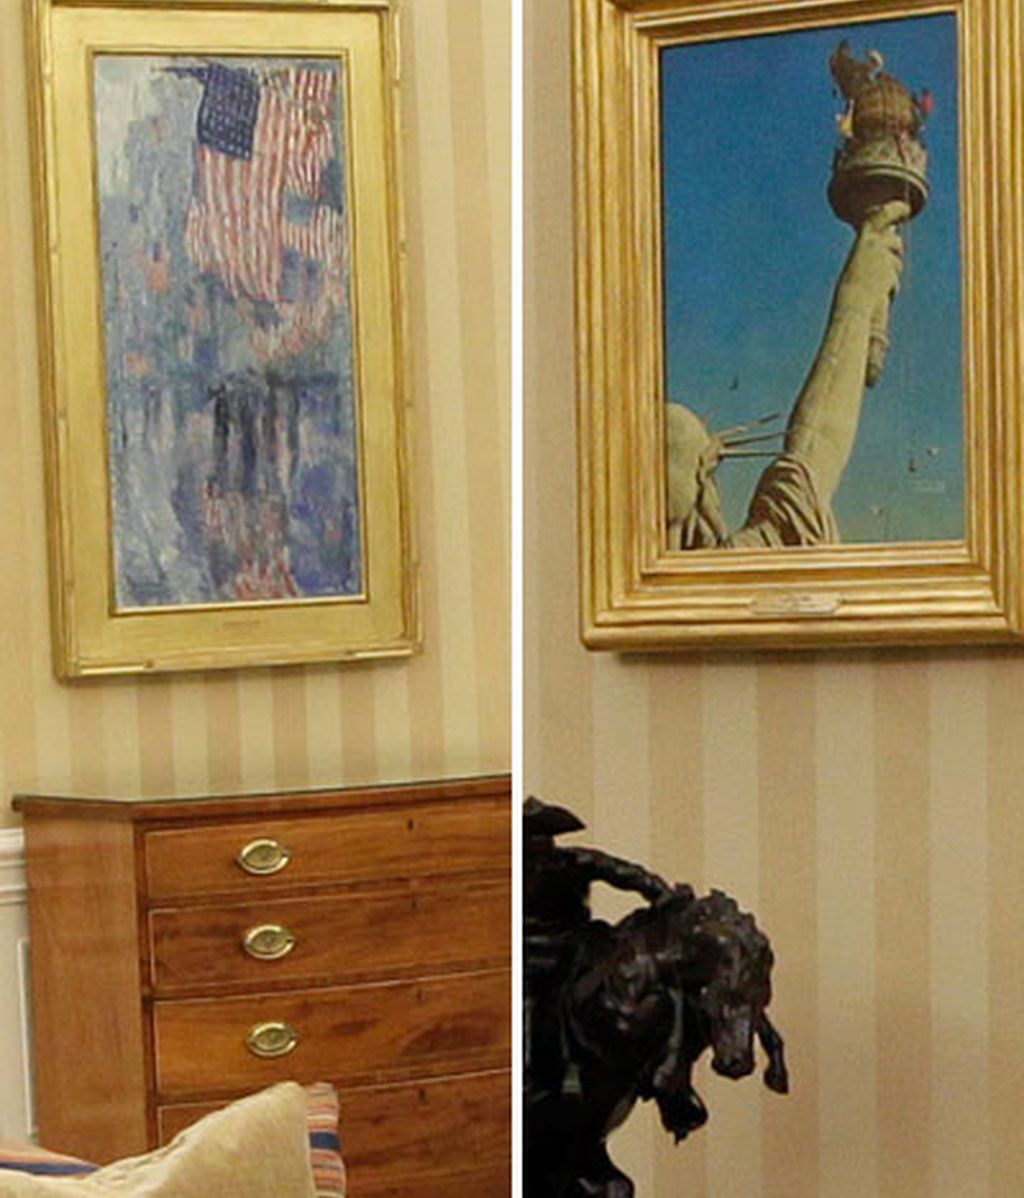 Obama redecora el Despacho Oval